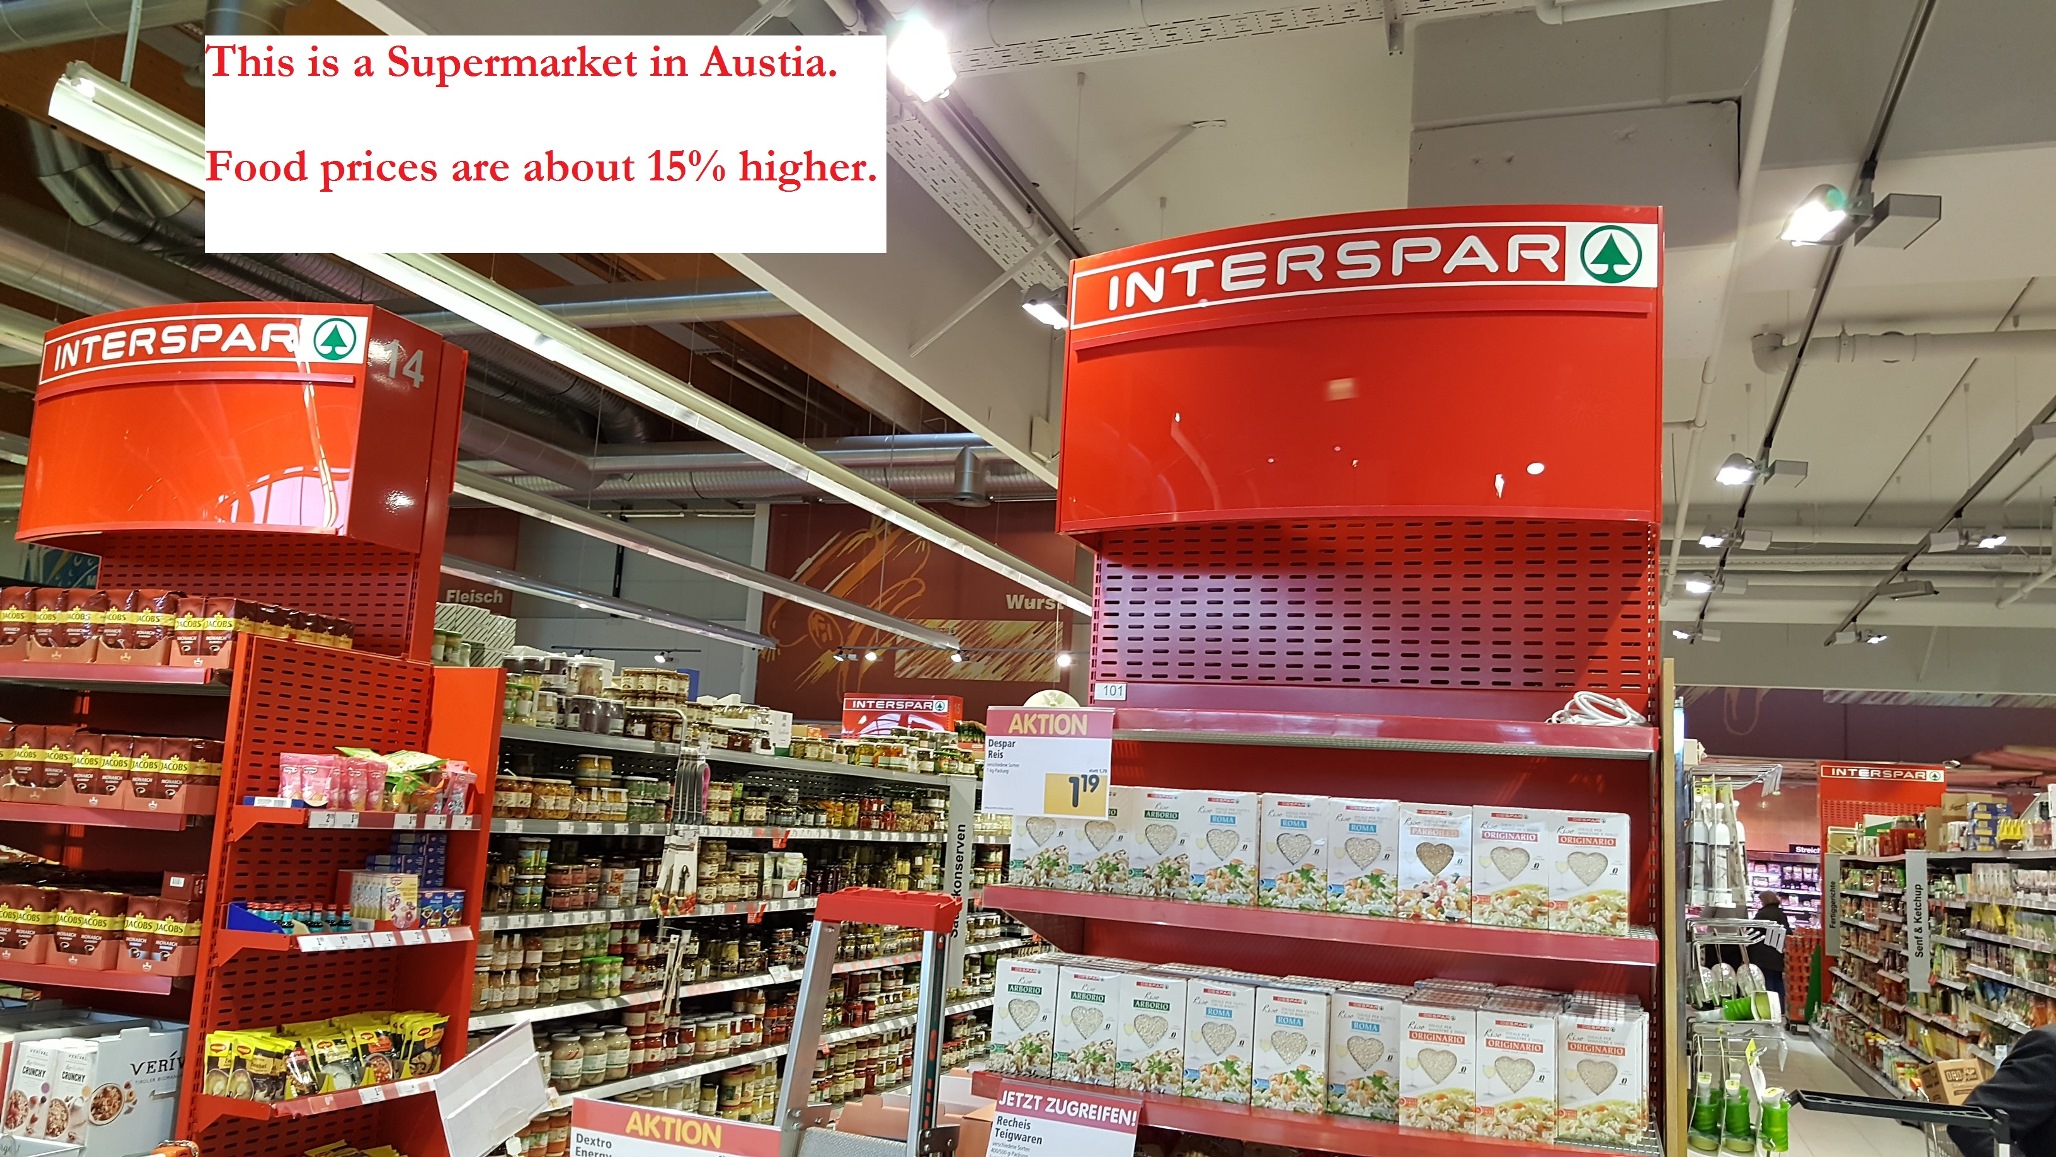 Interspar Supermarket